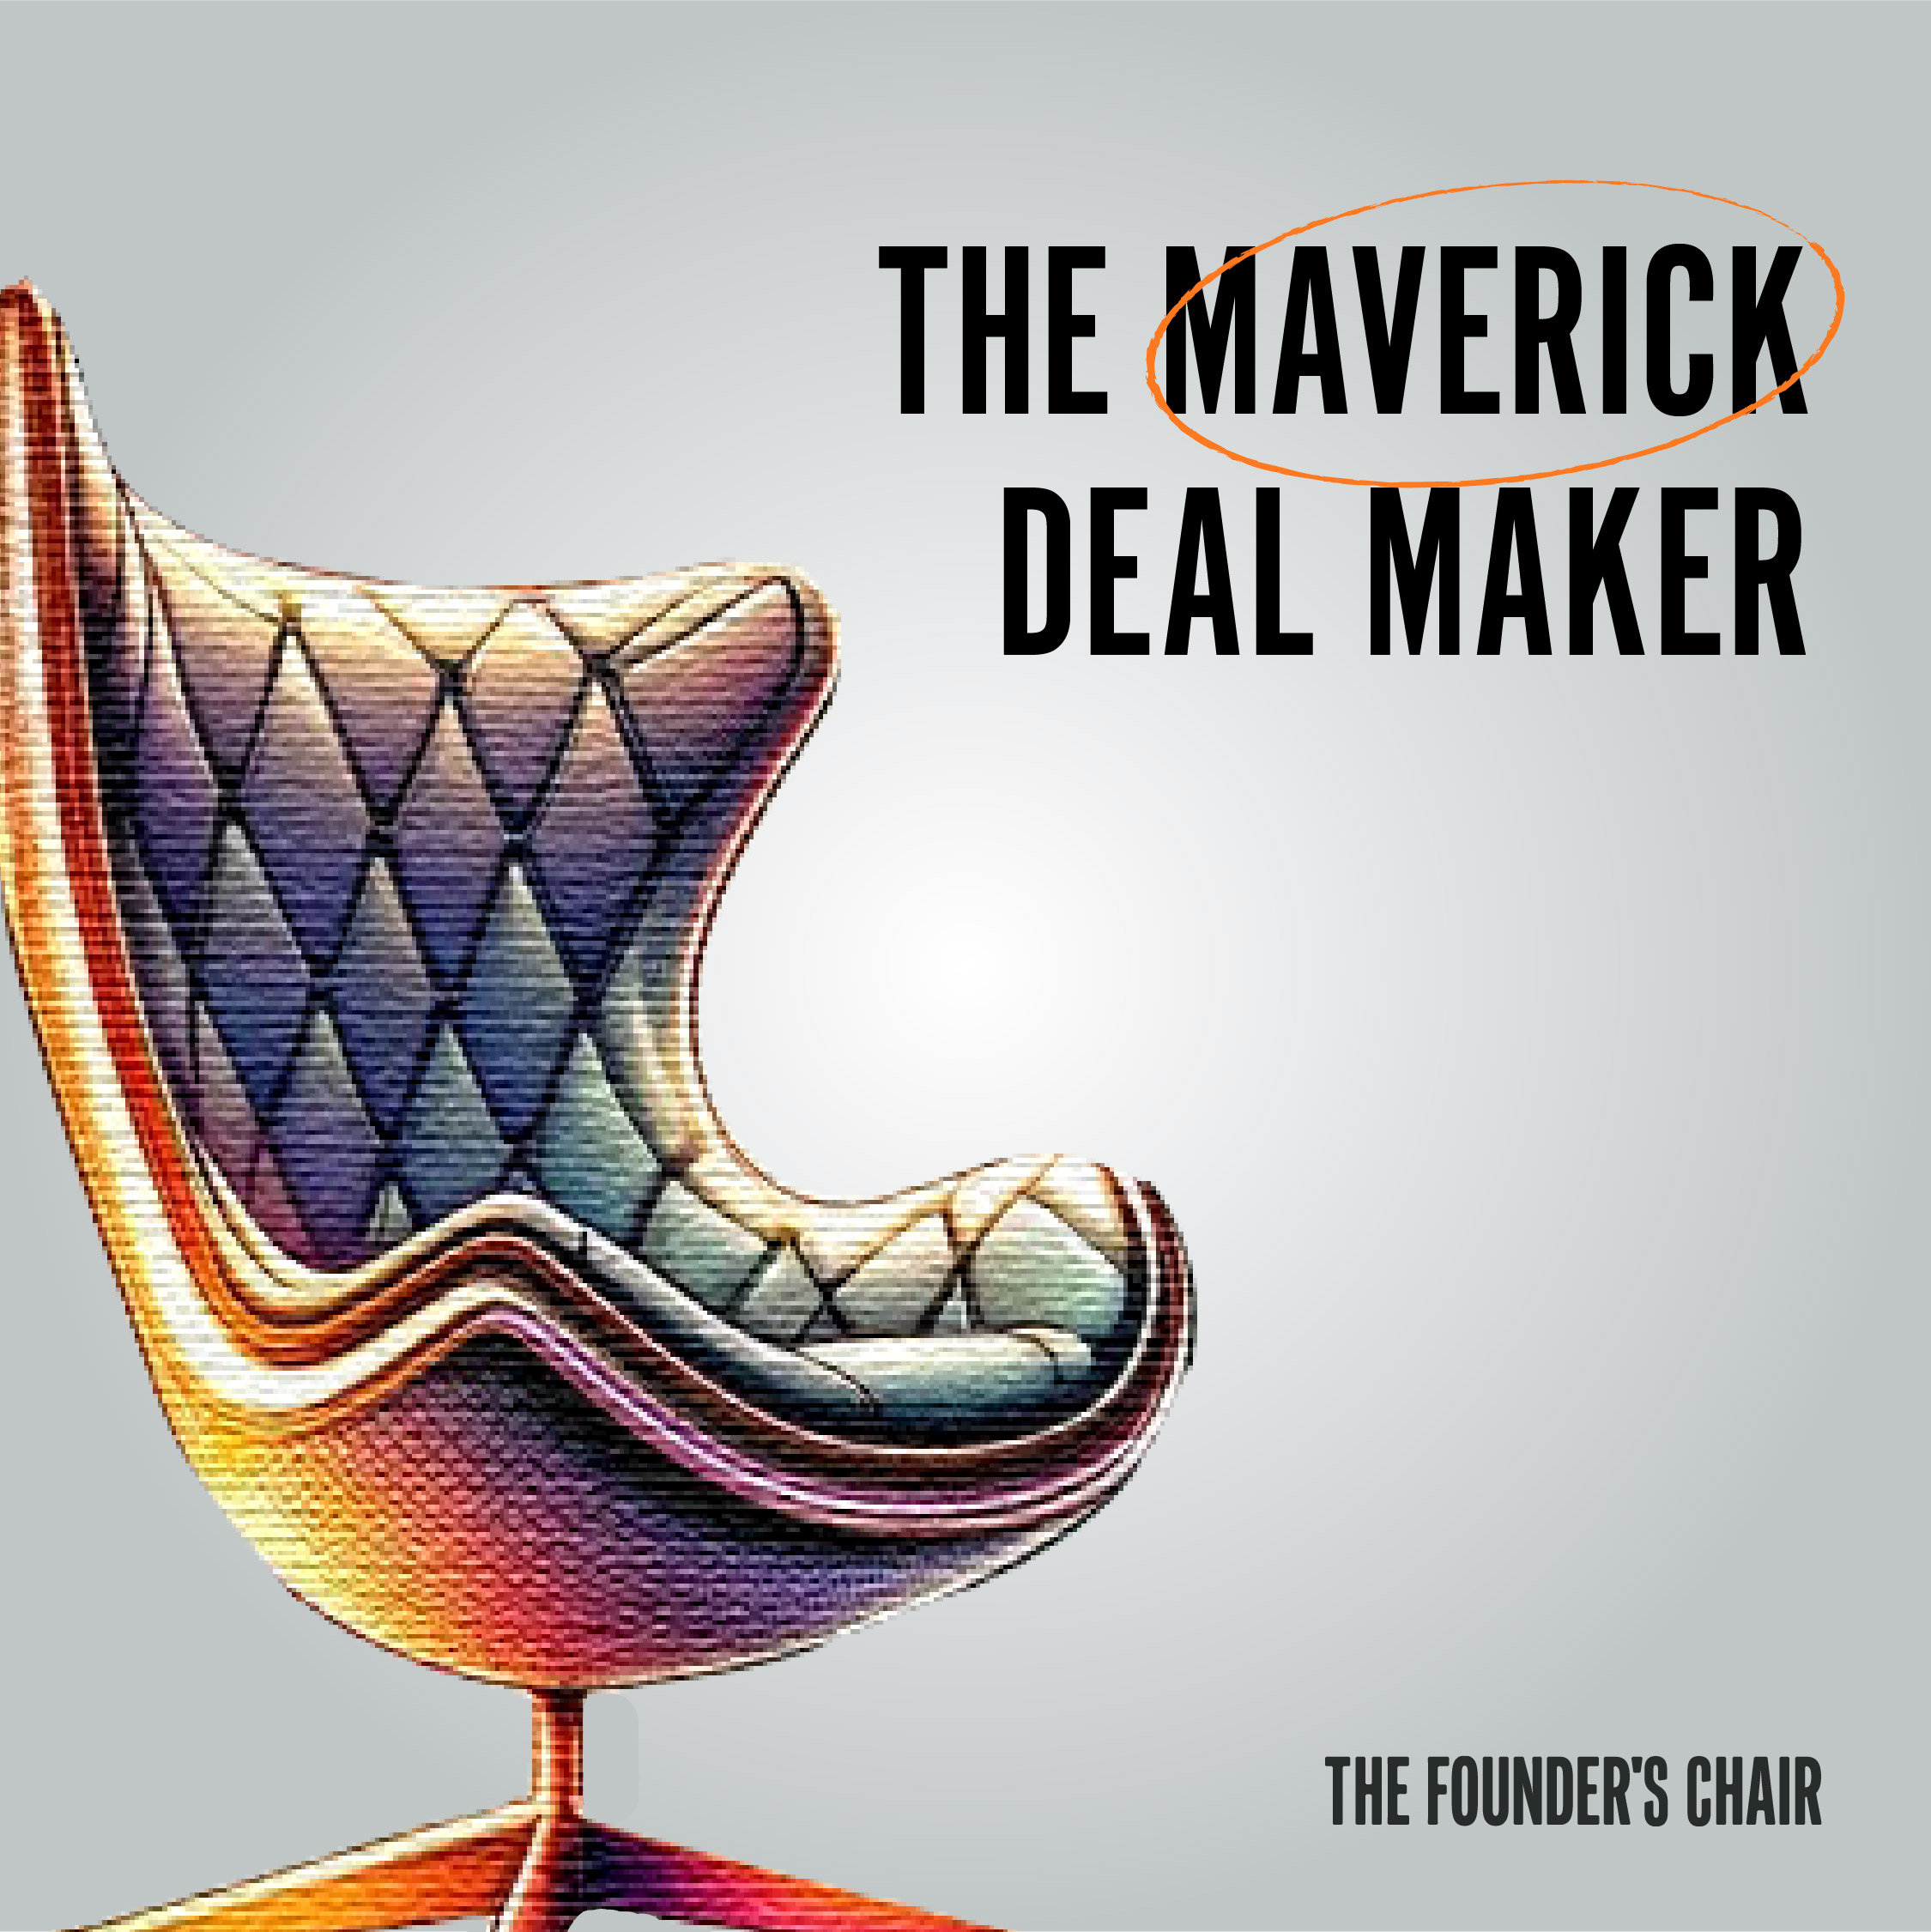 The Maverick Dealmaker Chair